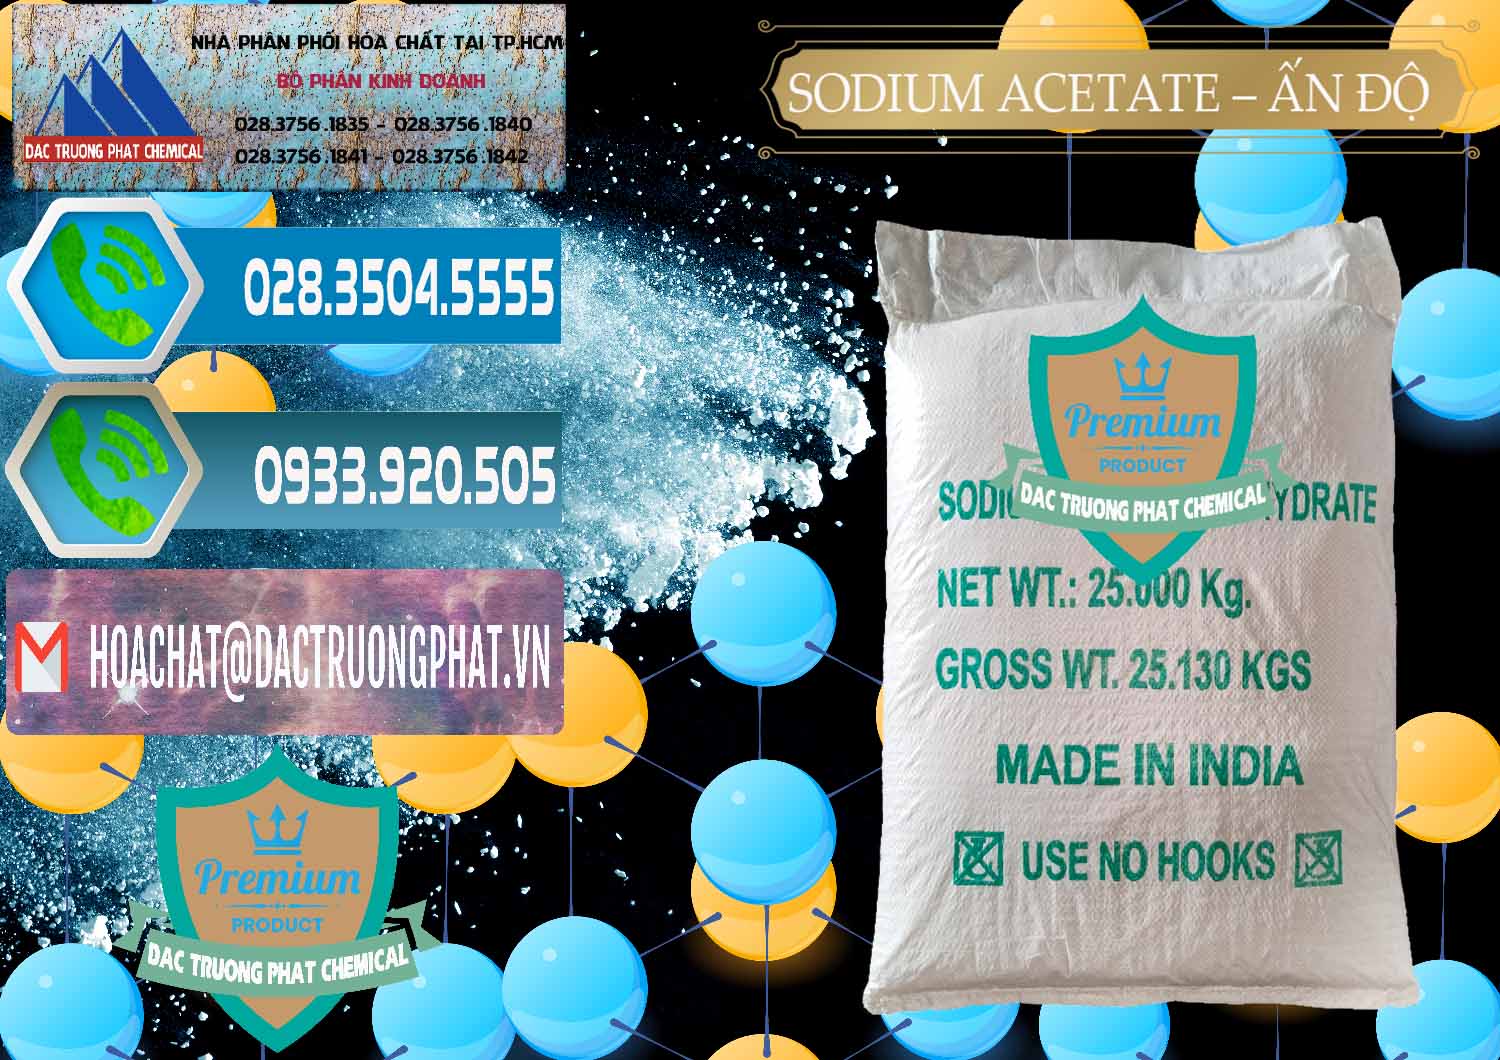 Chuyên cung ứng _ bán Sodium Acetate - Natri Acetate Ấn Độ India - 0133 - Công ty chuyên bán và cung cấp hóa chất tại TP.HCM - congtyhoachat.net